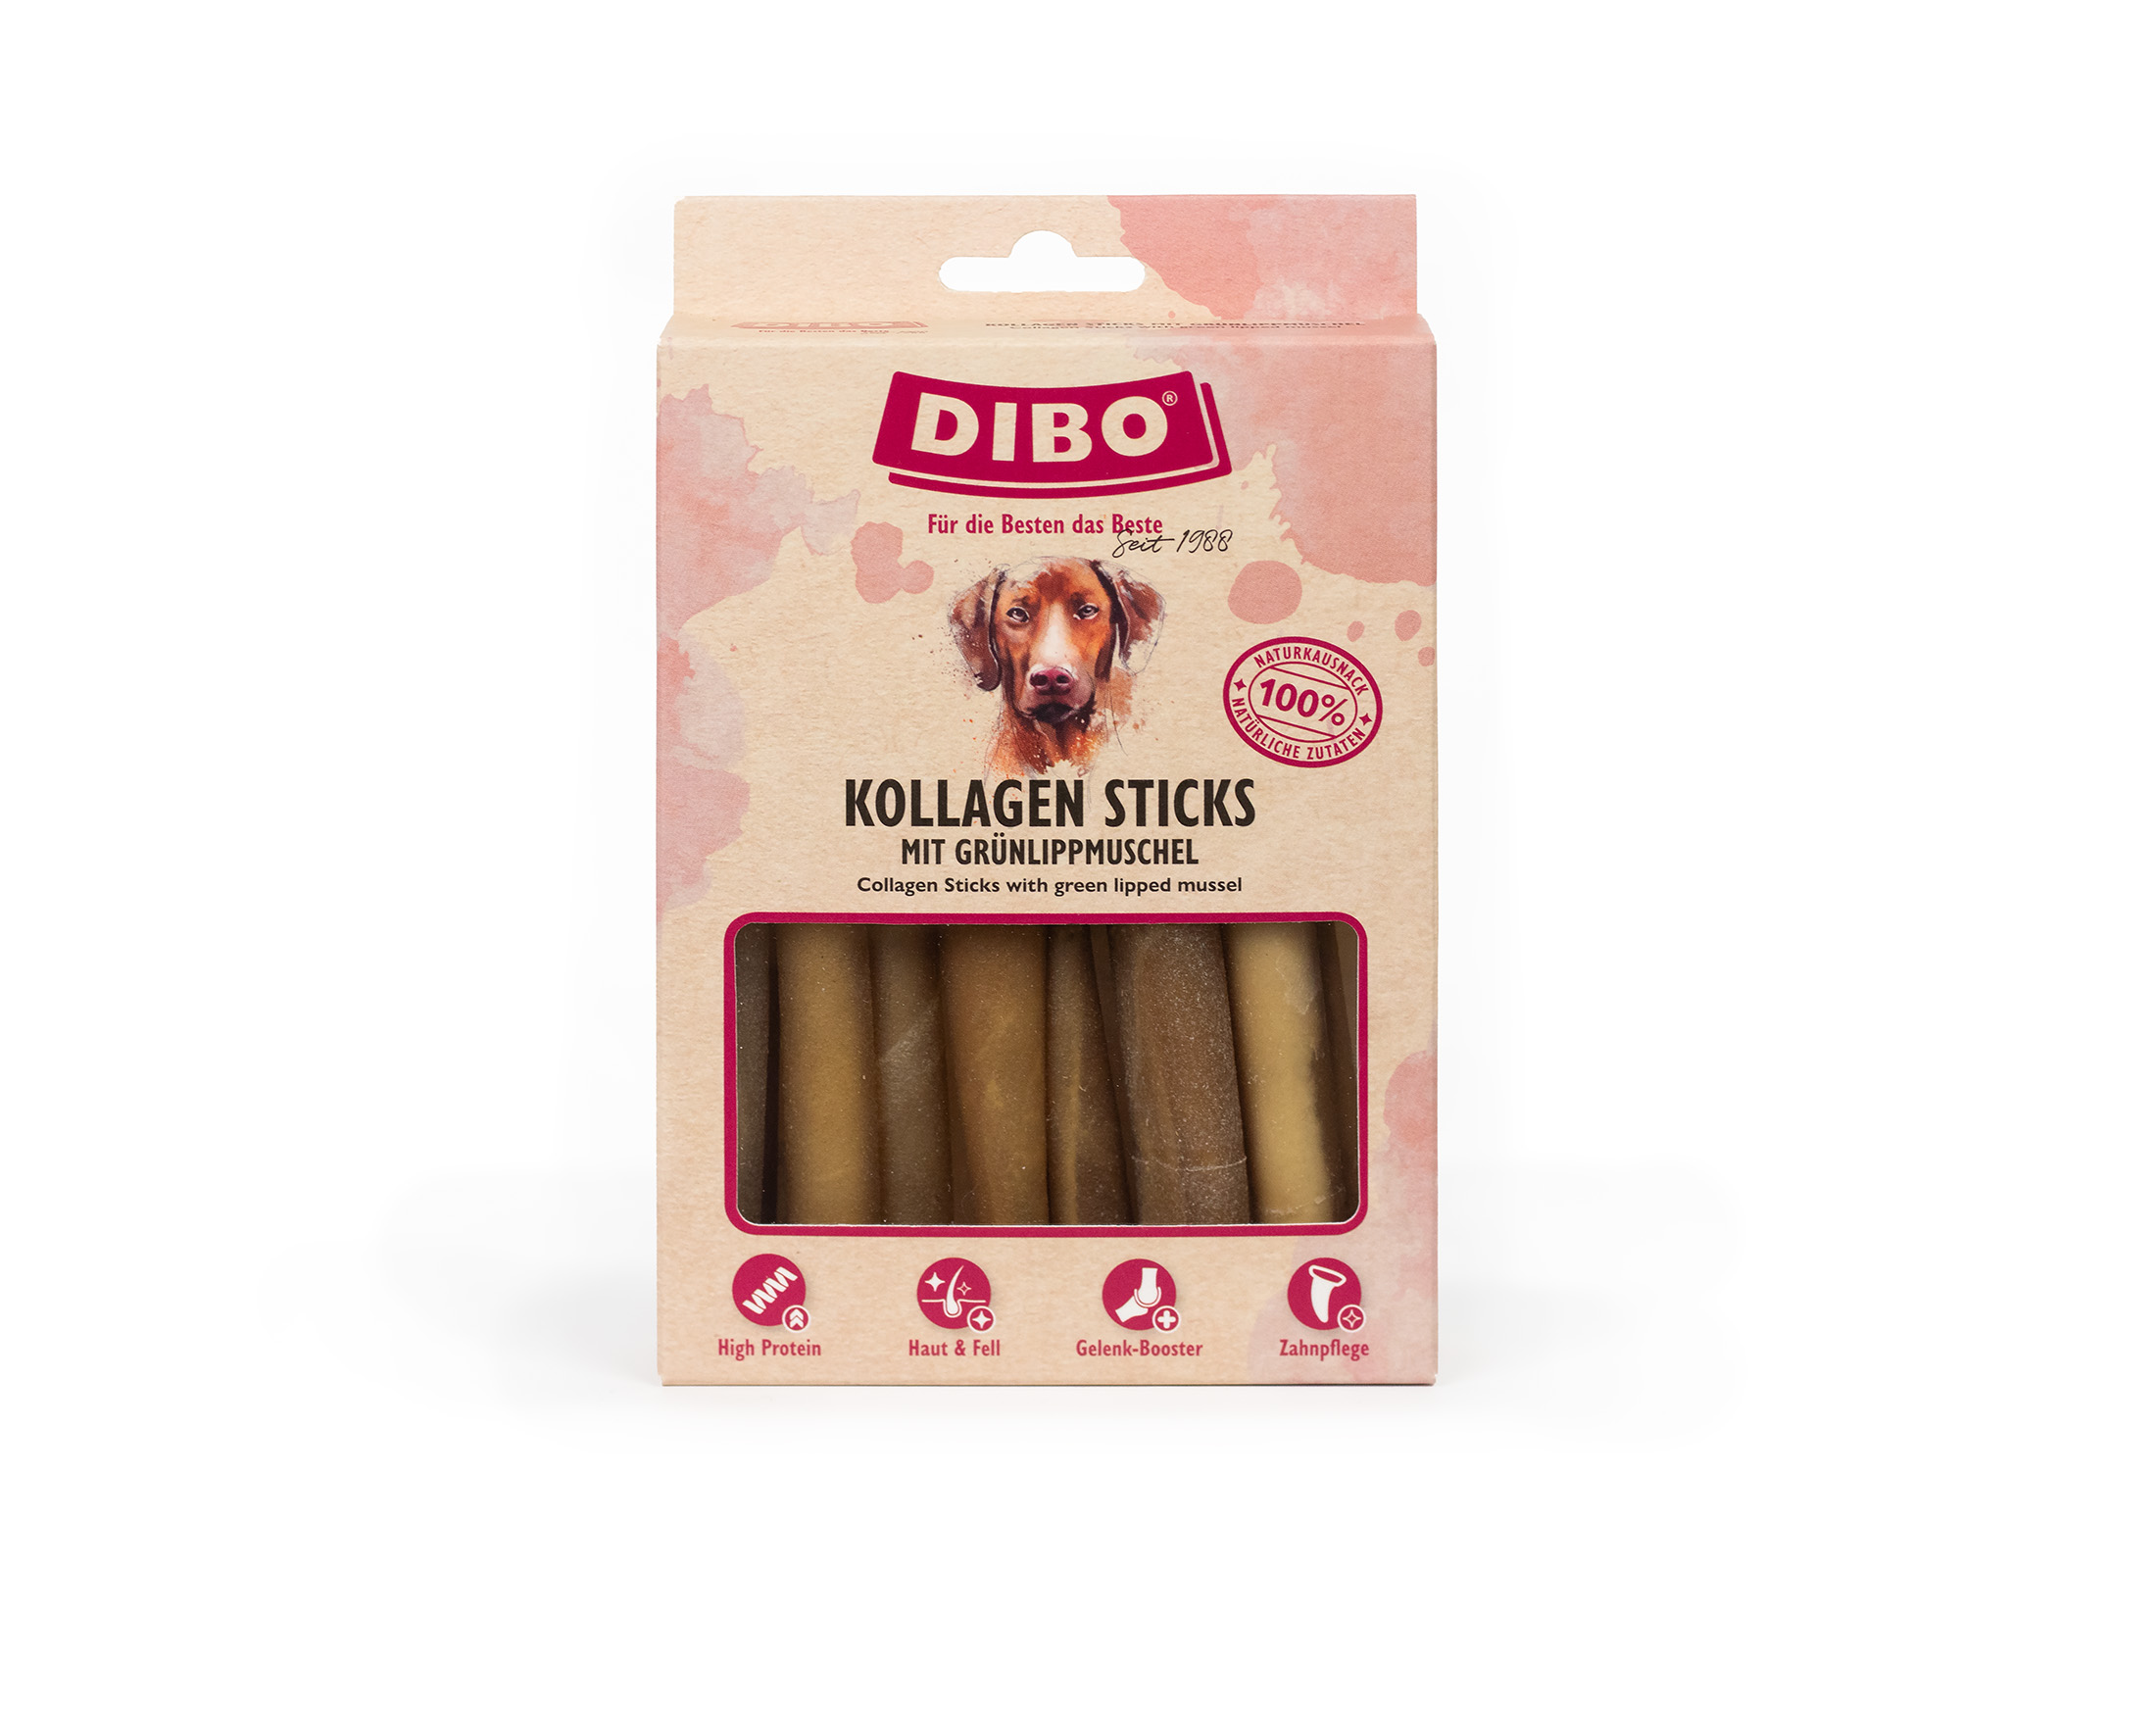 DIBO Kollagen Sticks, 150g